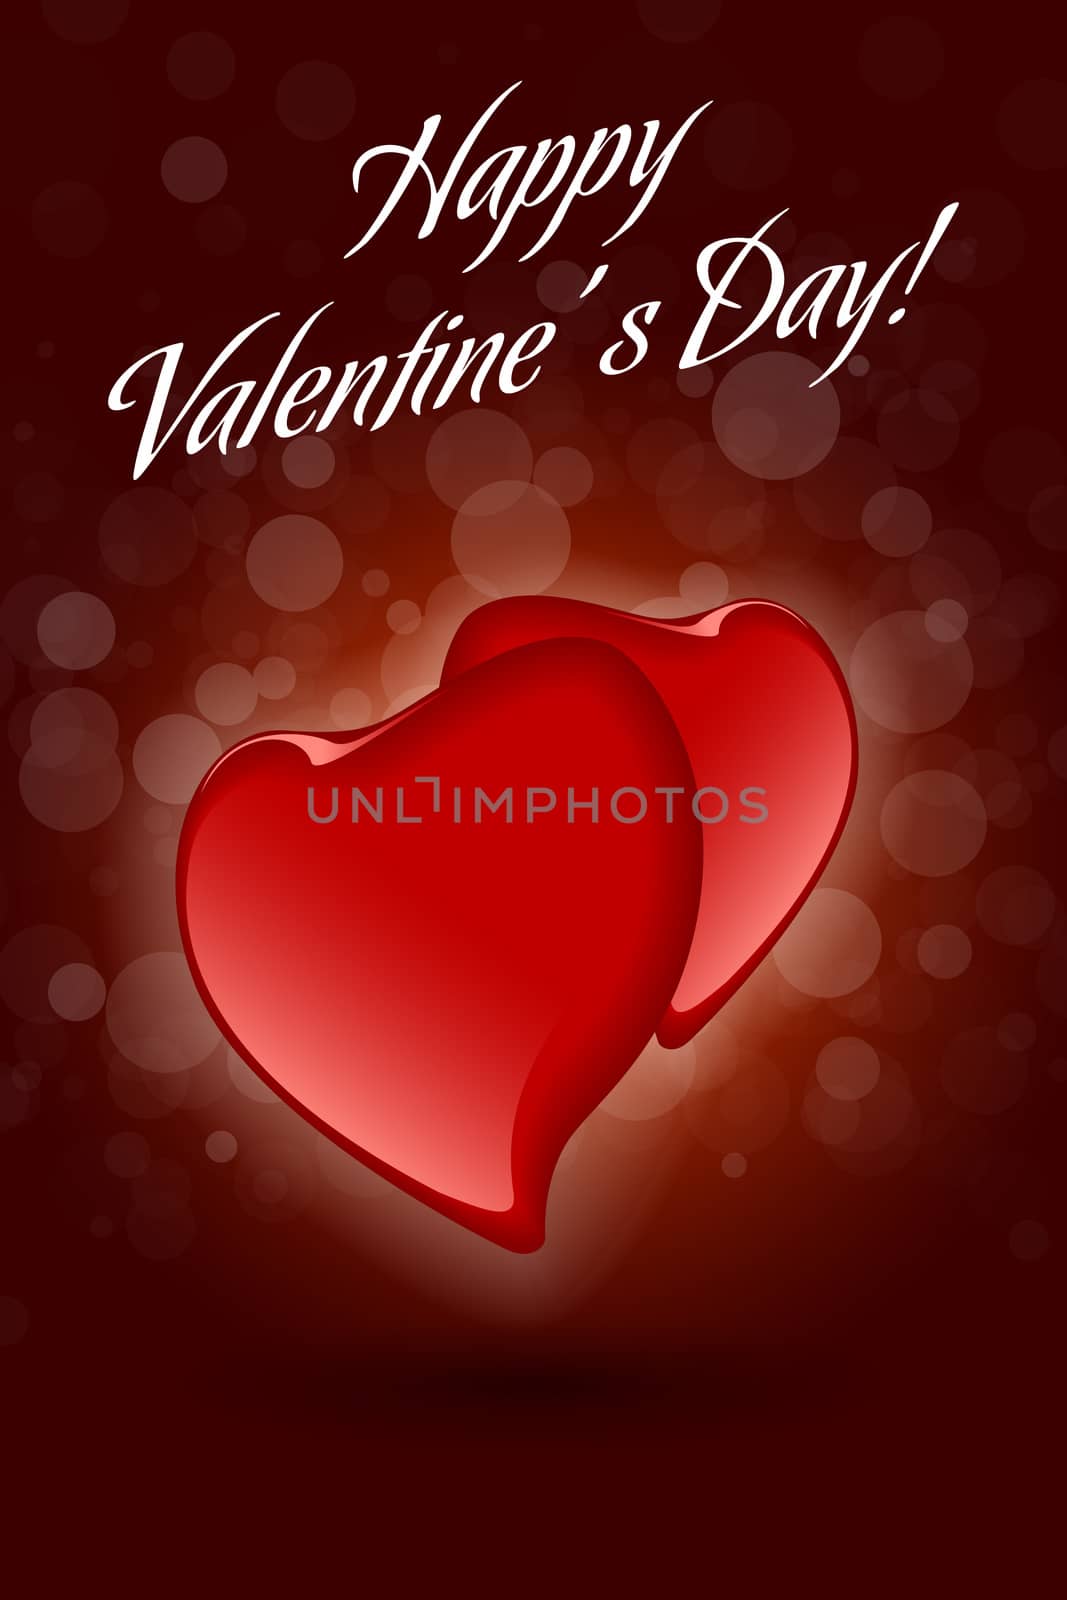 Two Red Valentine Hearts on Dark Decorative Background